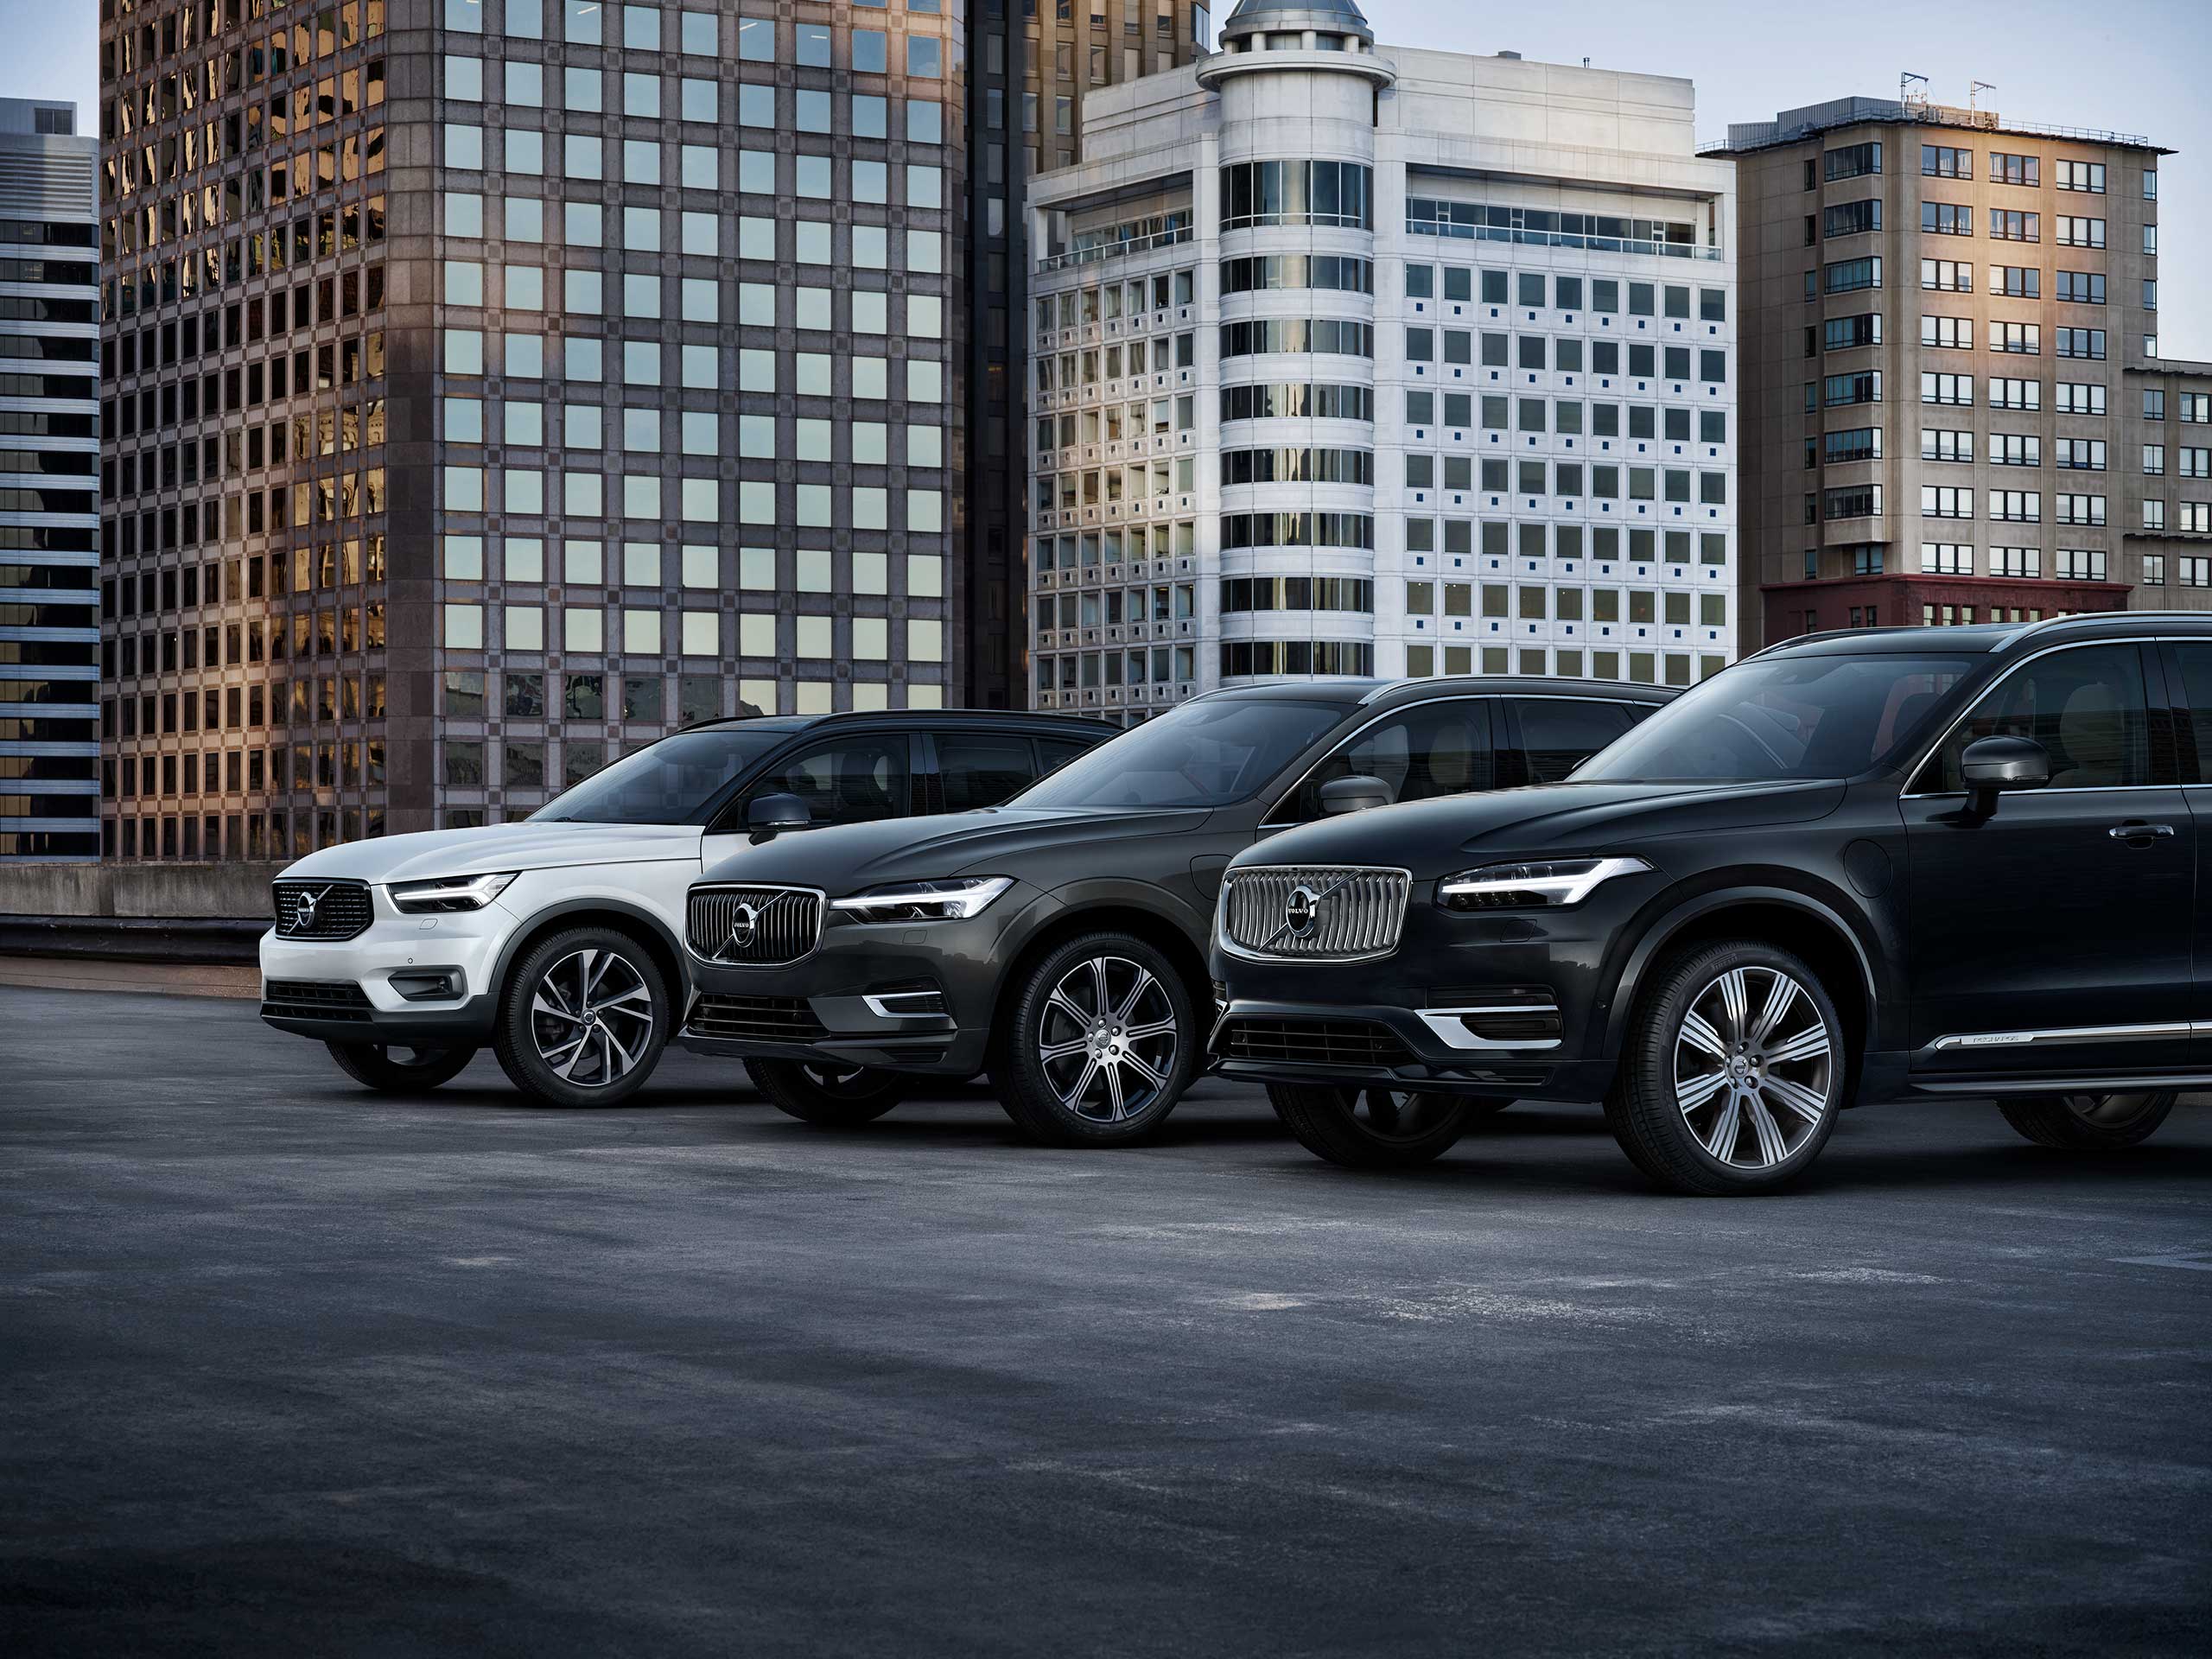 Tre forskellige Volvo modeler i en parkeringsplads.